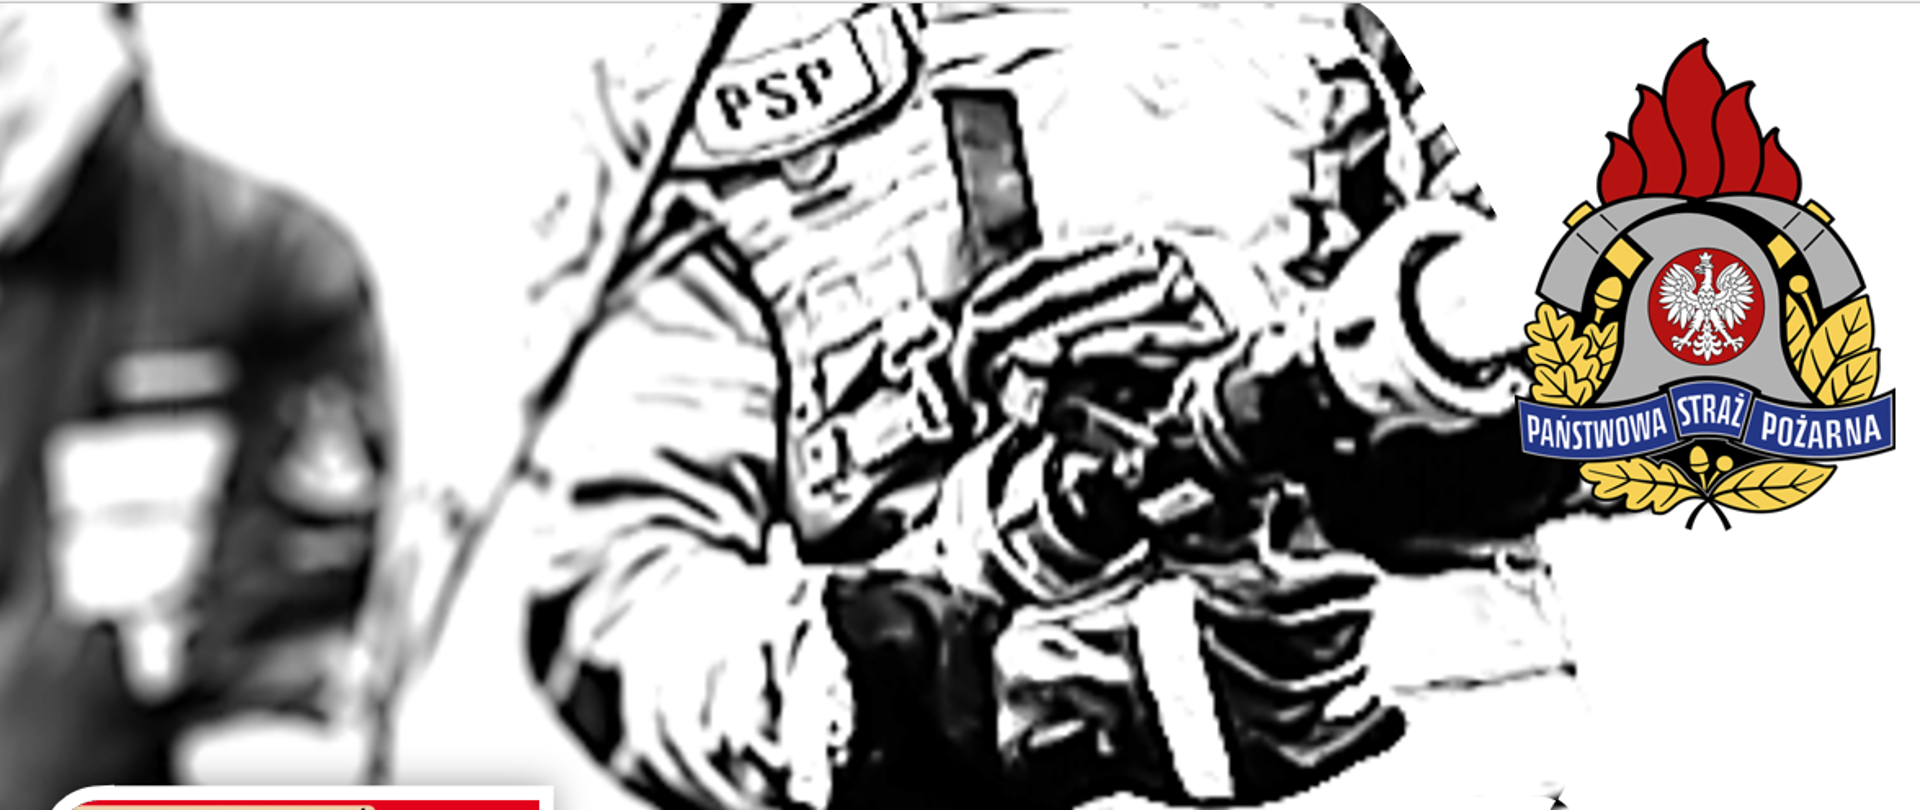 Infografika. Strażak w działaniach w ubraniu specjalnym. w prawym górnym rogu logo PSP.